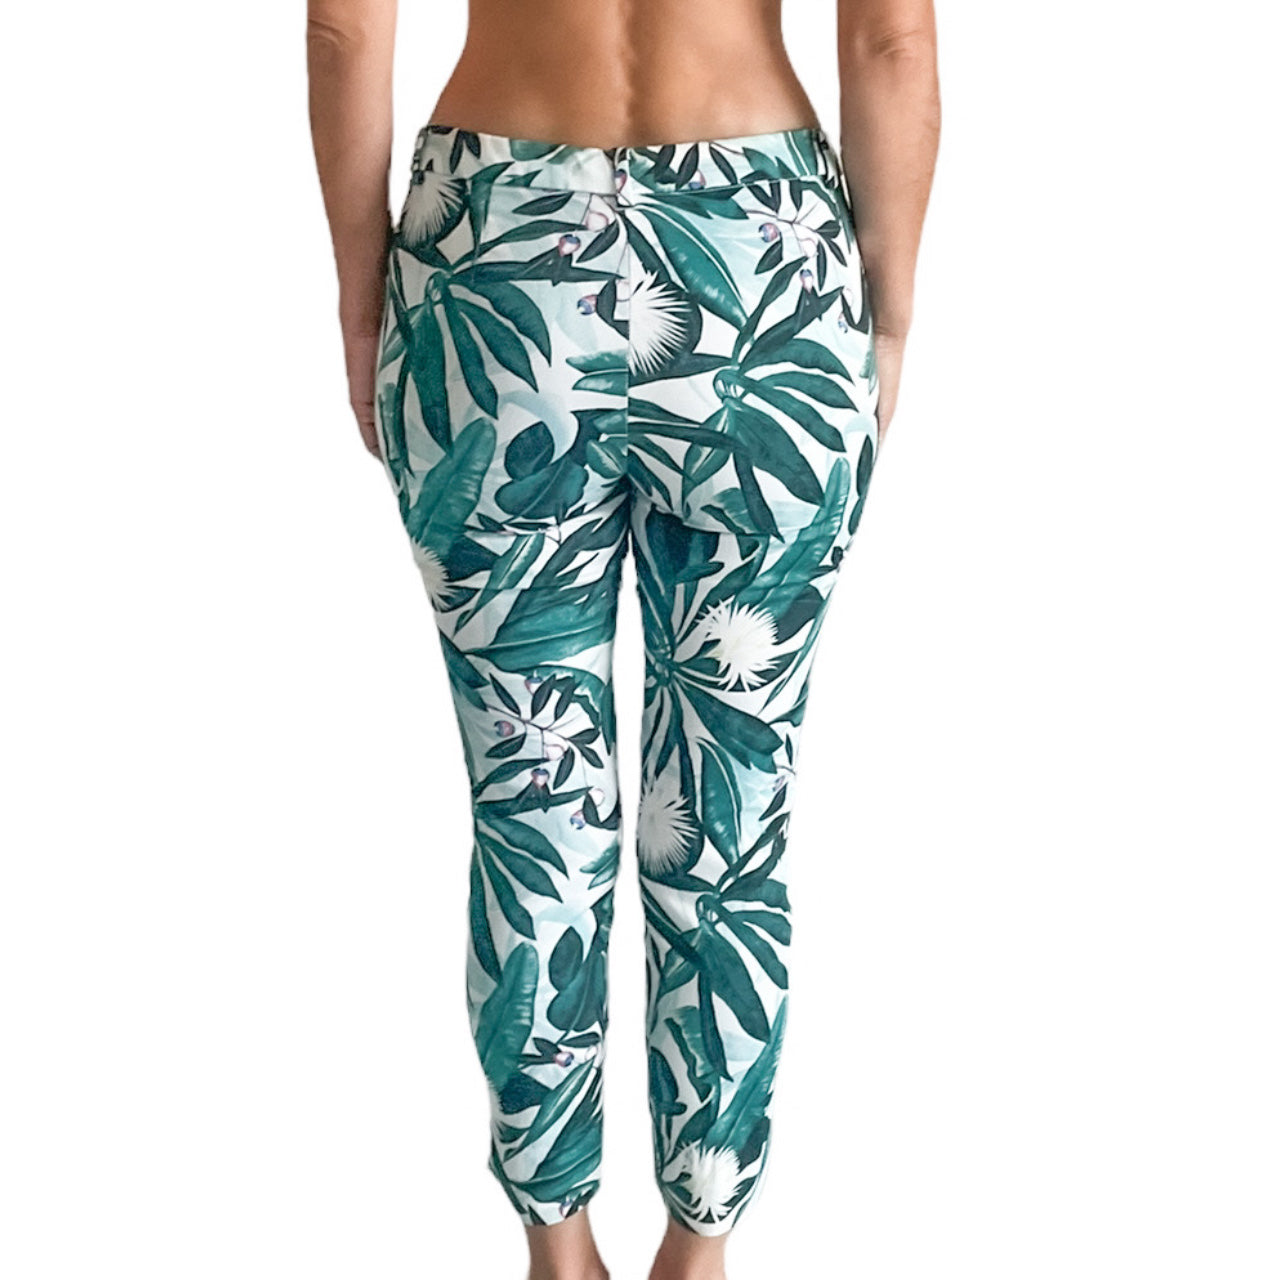 Anna Glover X H&M Tropical Print Trousers